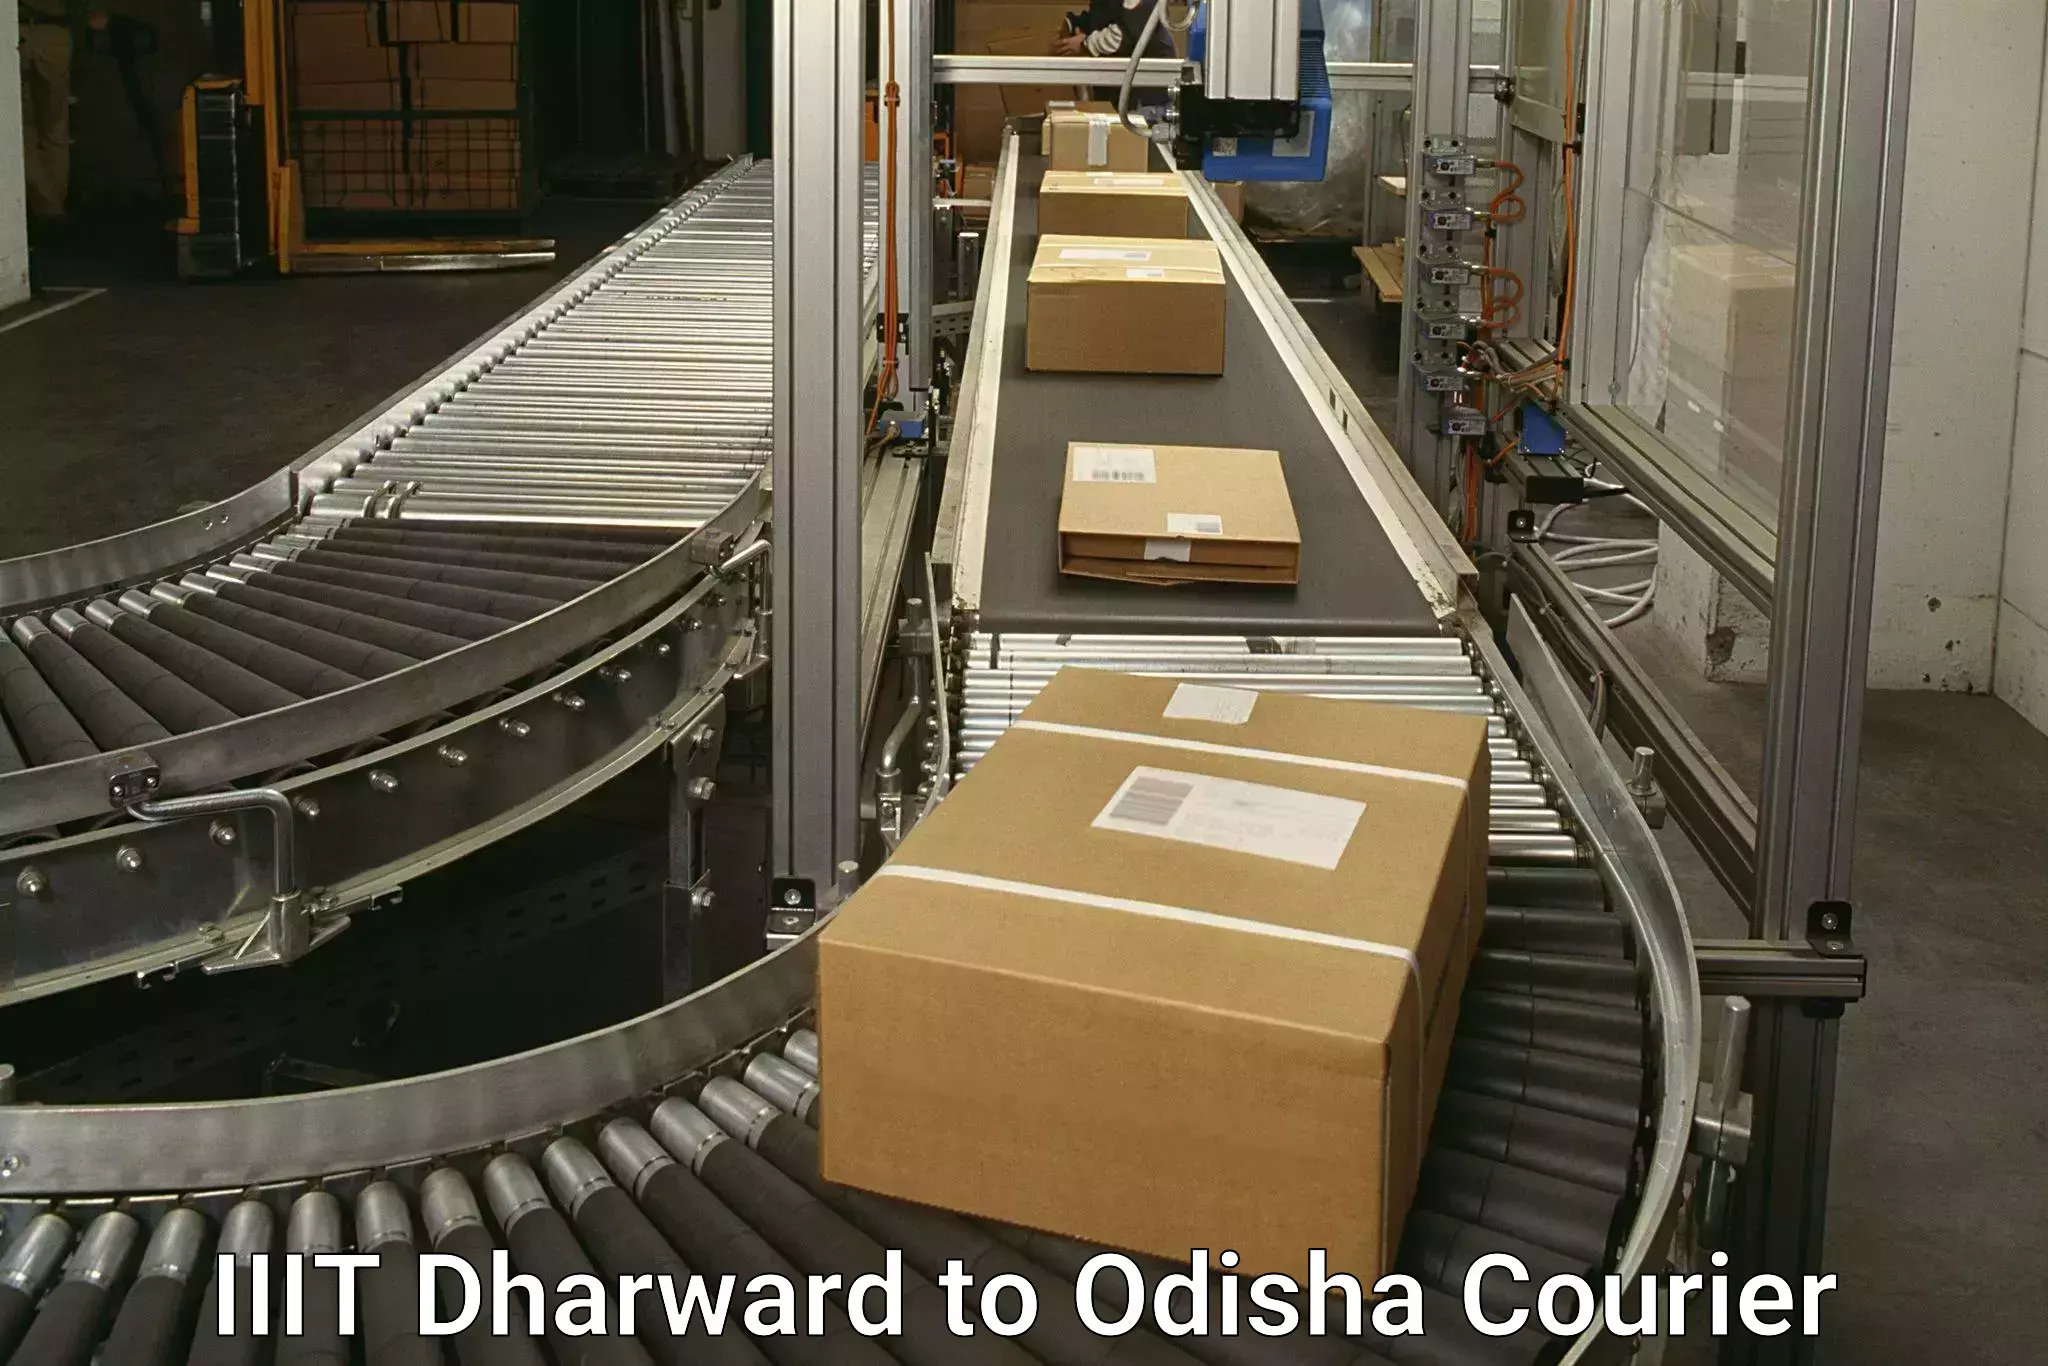 Fragile item shipping IIIT Dharward to Dandisahi